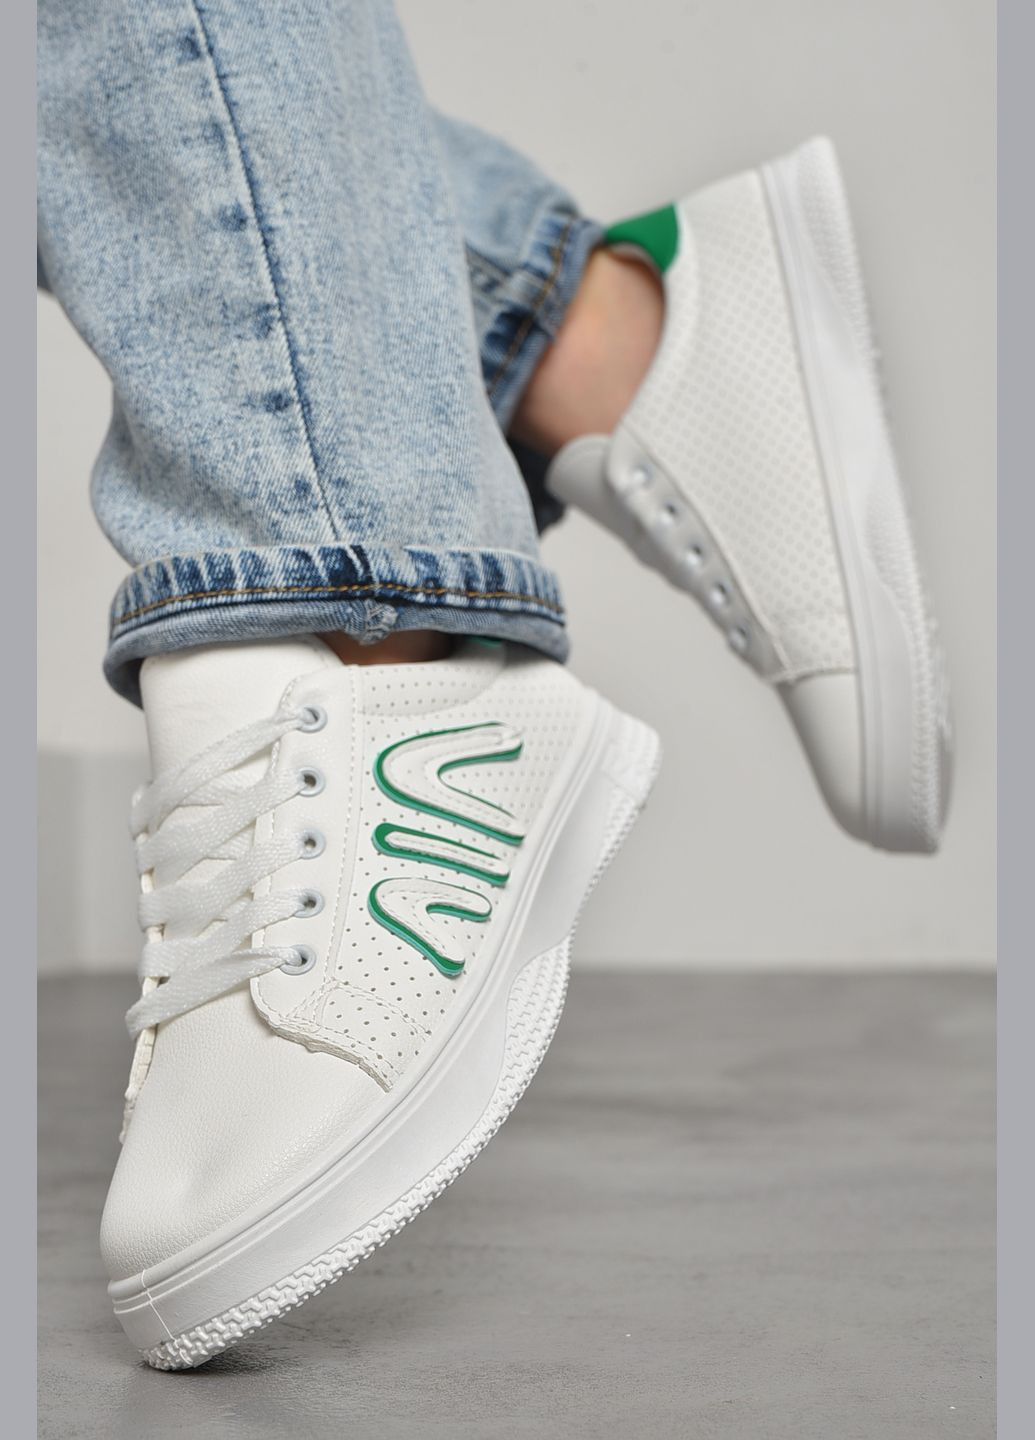 Белые демисезонные кроссовки женские белого цвета на шнуровке Let's Shop